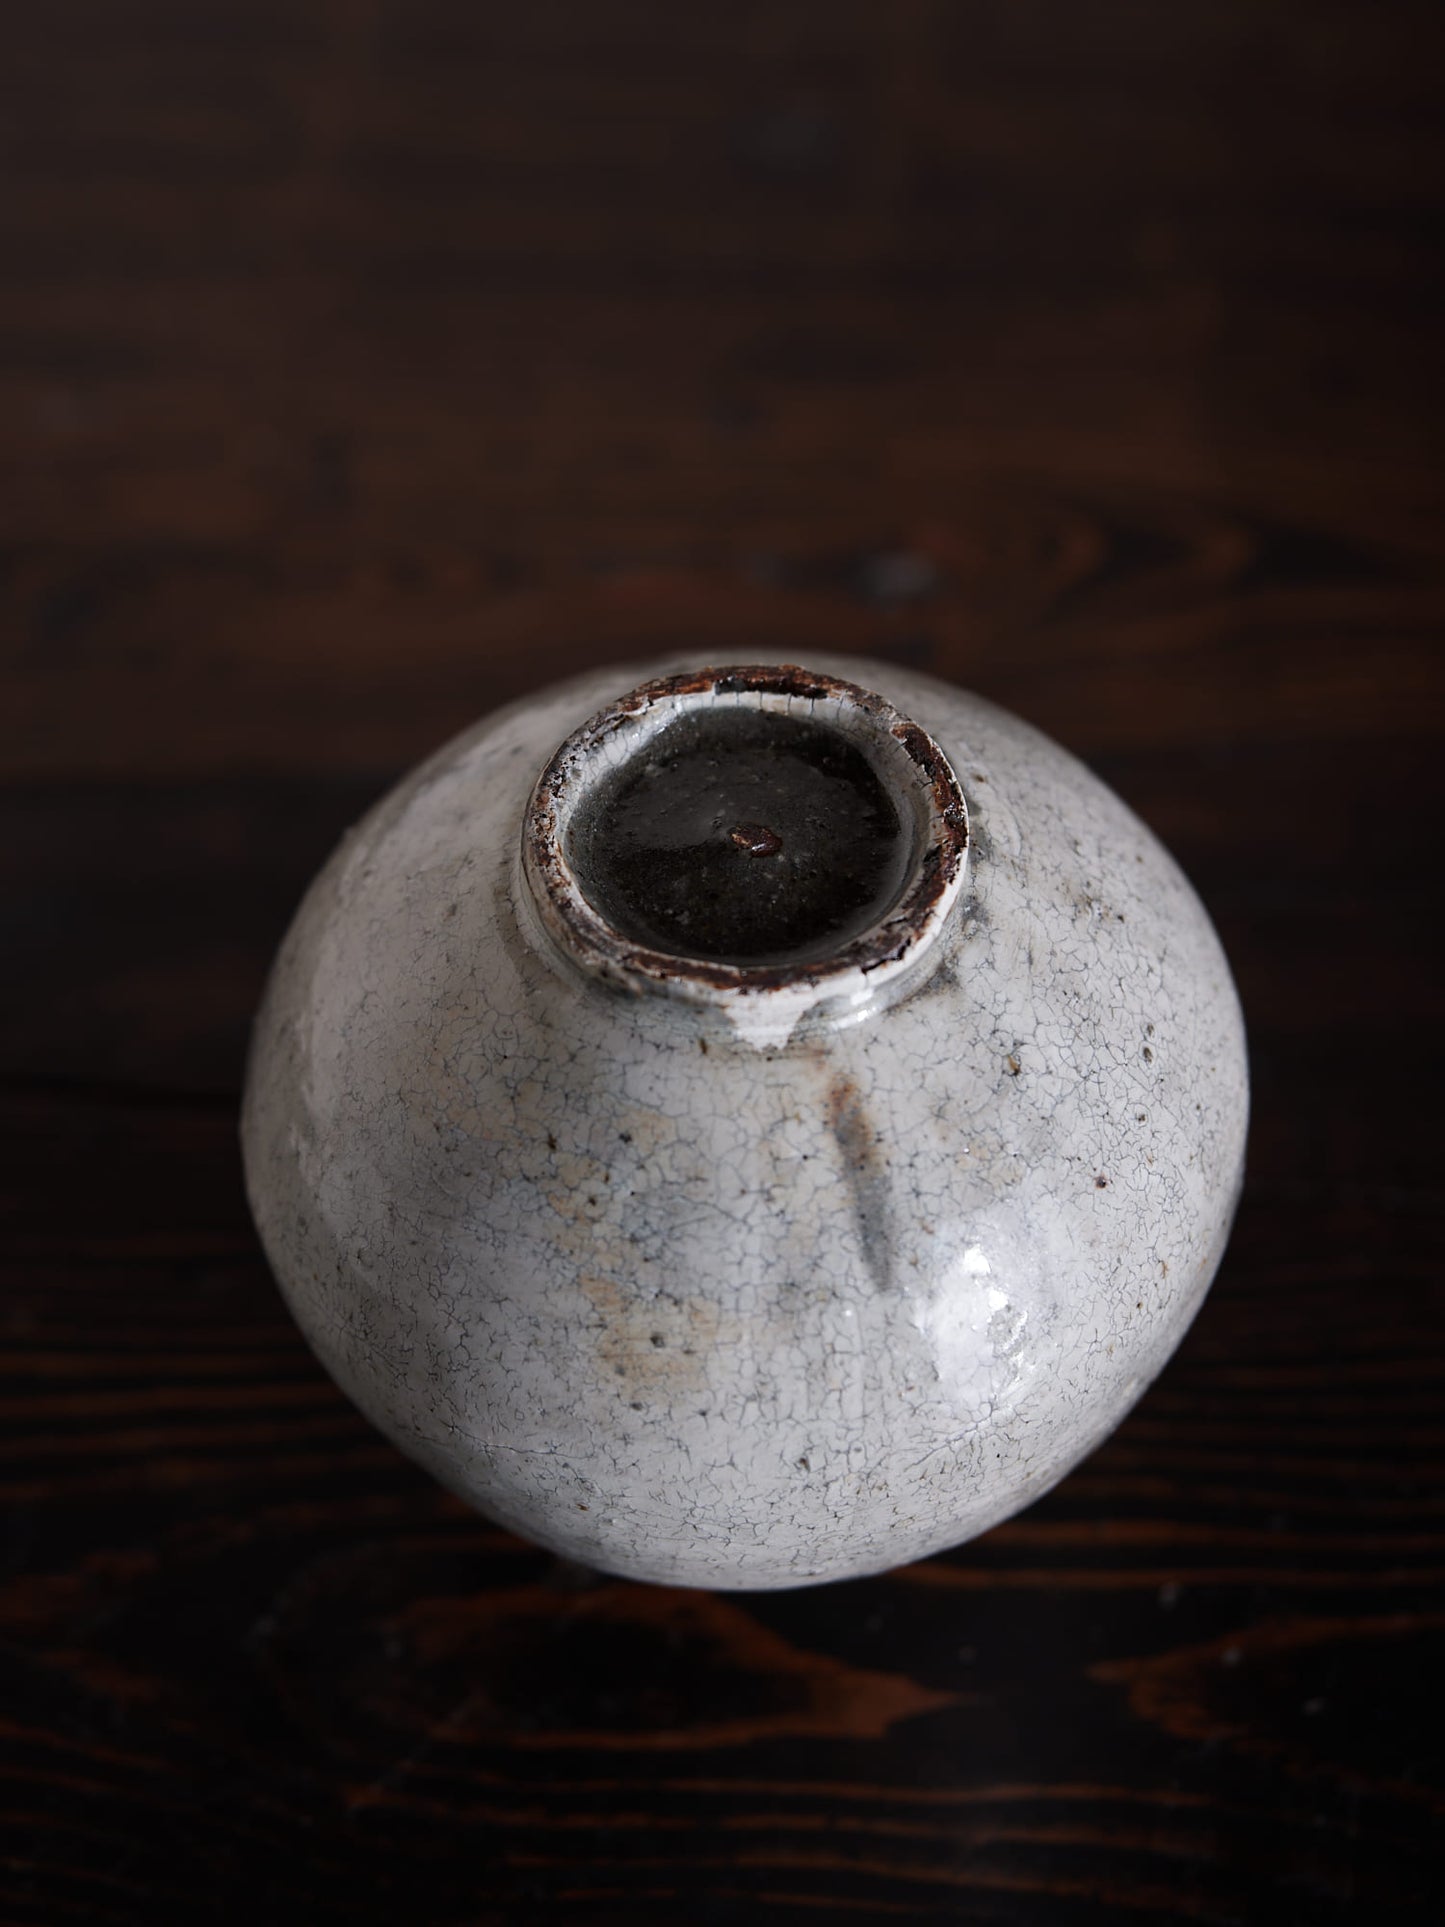 Rimpei Watanabe | Ceramic Vase 